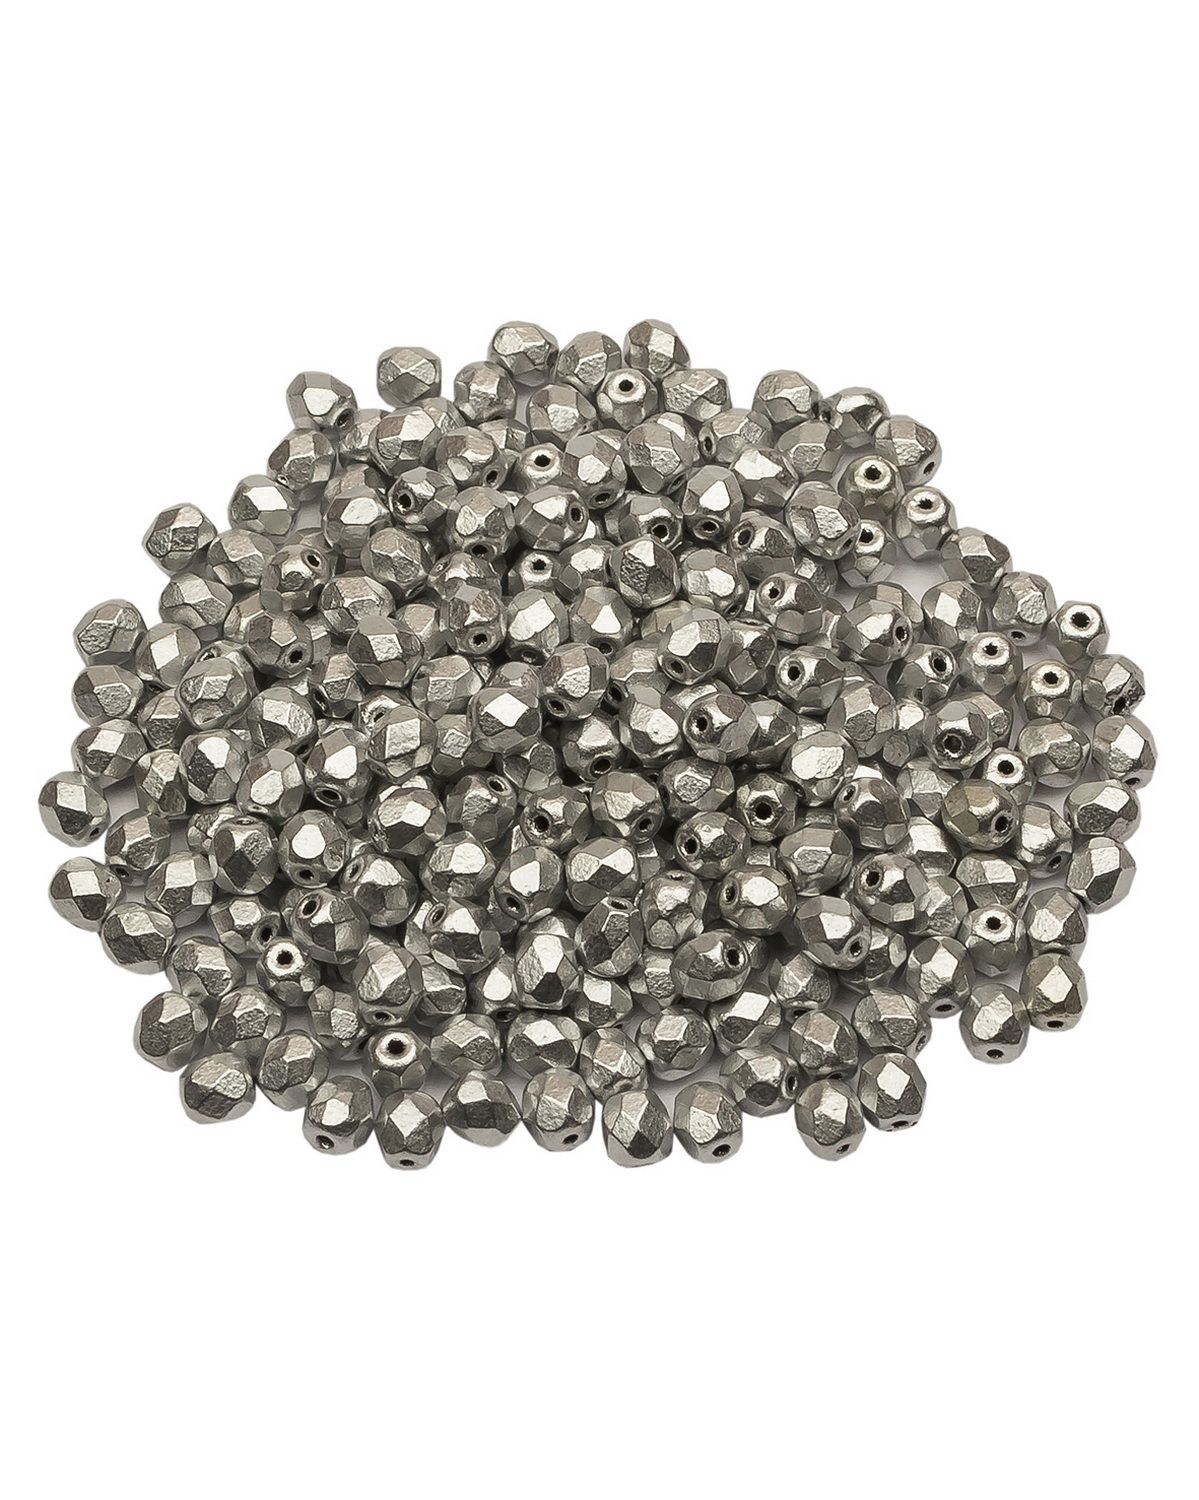 Стеклянные чешские бусины Fire polished beads ганеные круглые 4 мм Aluminium Silver 250шт